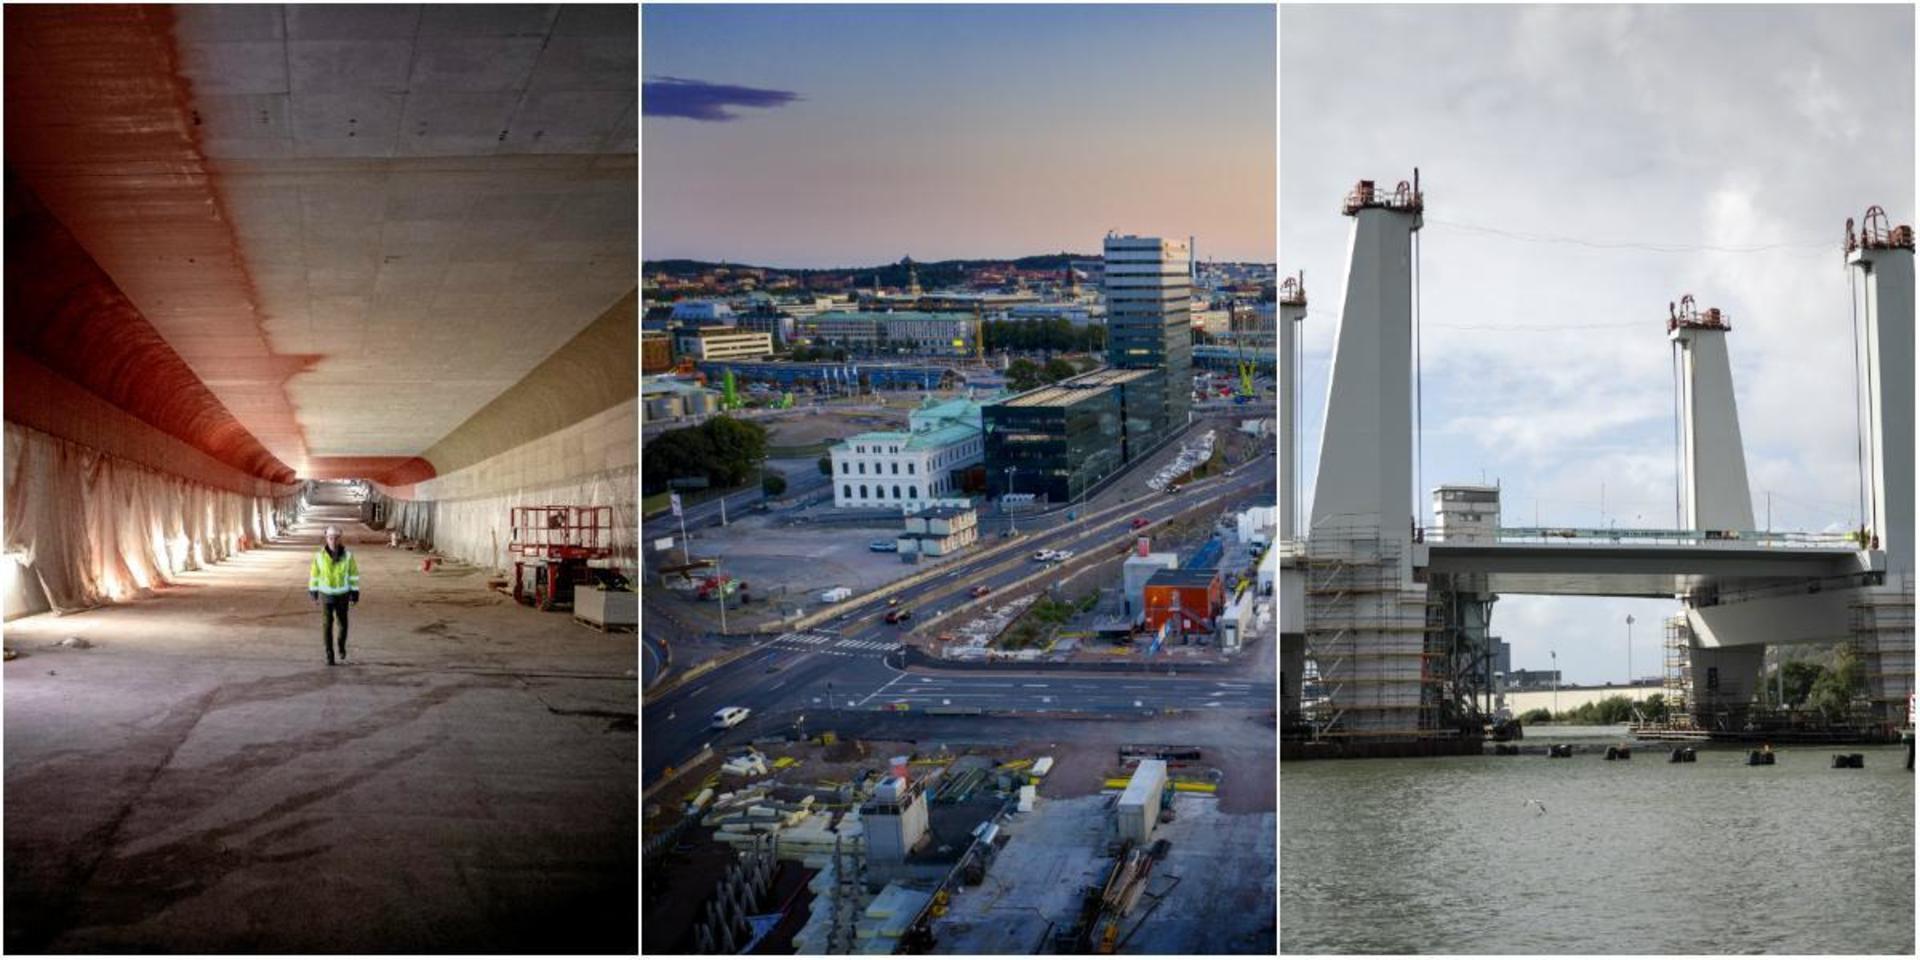 Såväl Marieholmstunneln som Hisingsbron beräknas stå klara under nästa år. Samtidigt påbörjas andra arbeten som ställer till det för den som ska ta sig fram i Göteborg. 